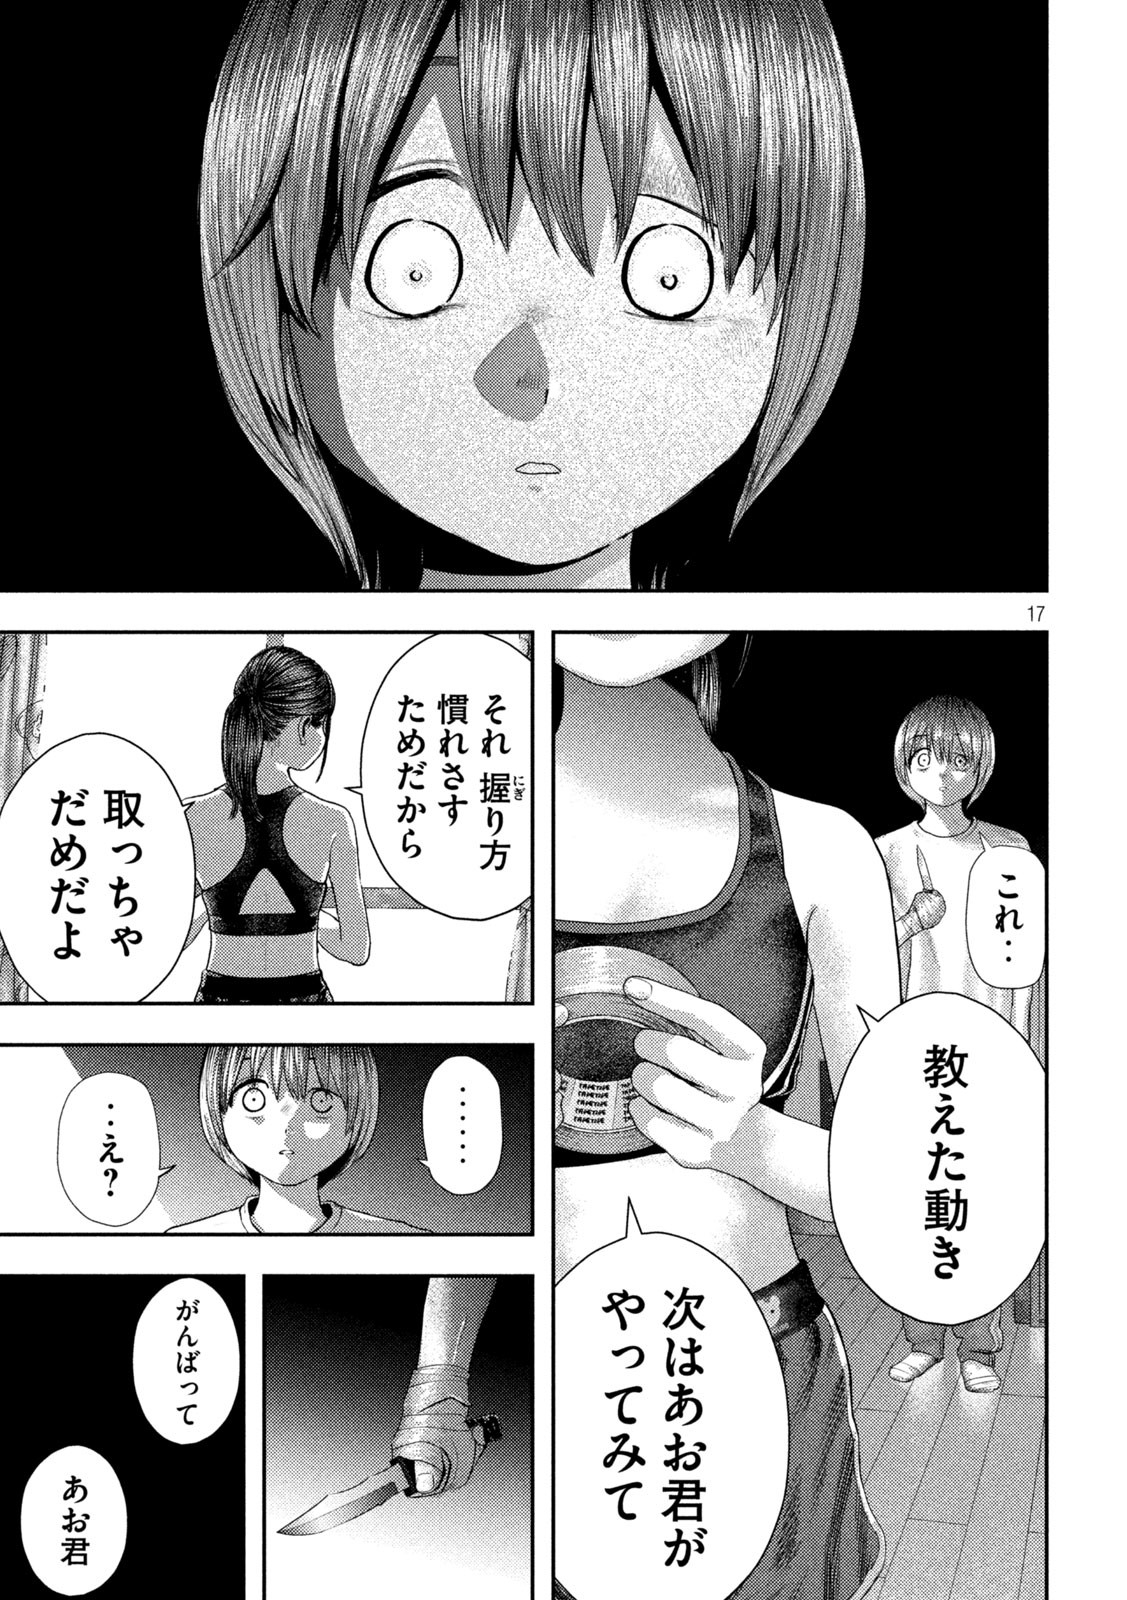 Nezumi no Koi - Chapter 4 - Page 17